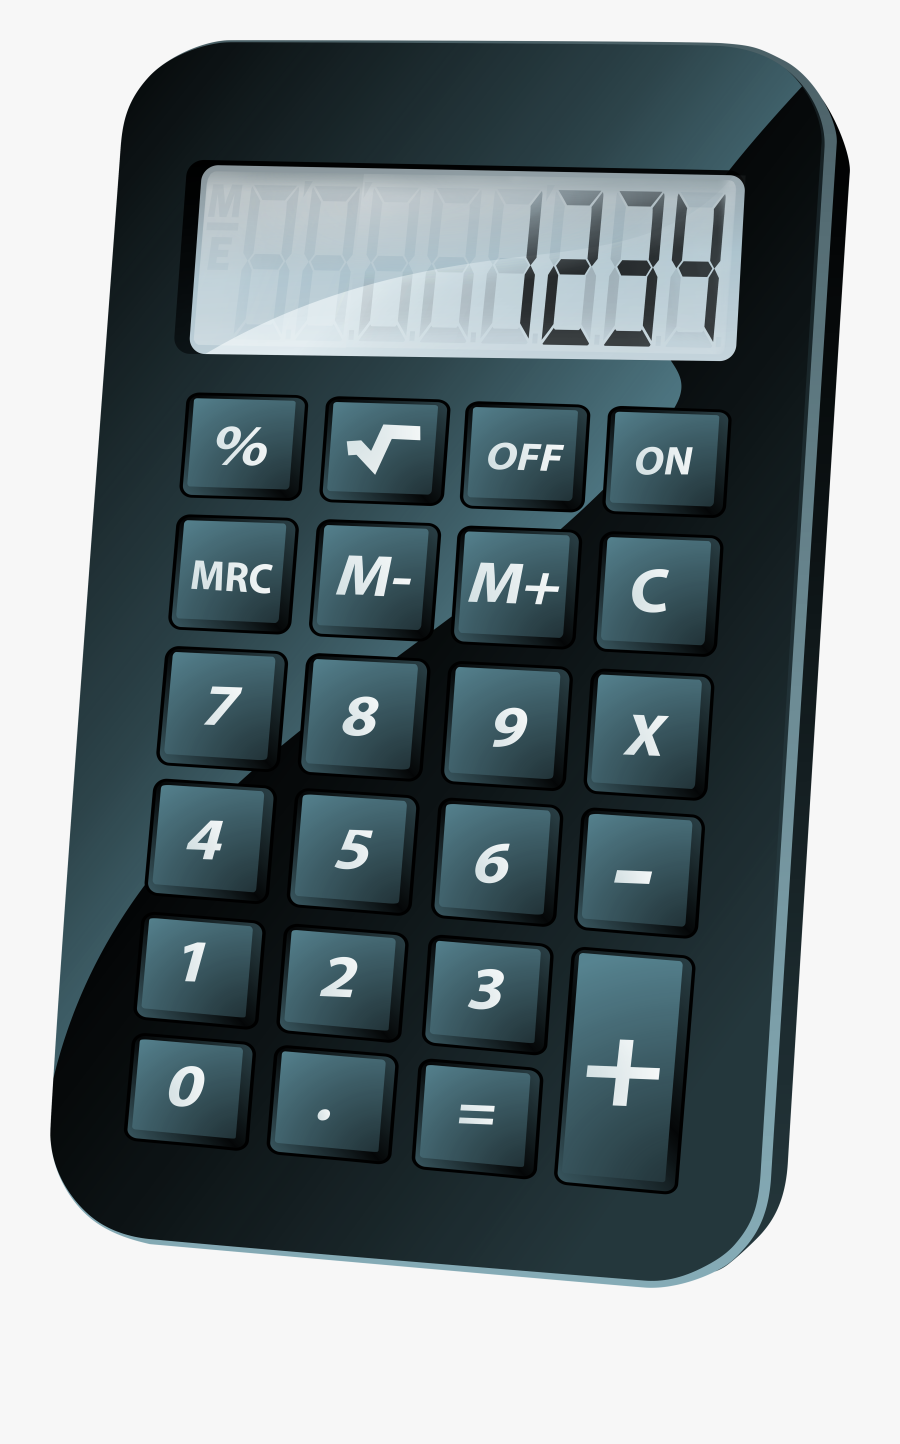 Calculator Png Clip Art - Cartoon Calculator, Transparent Clipart